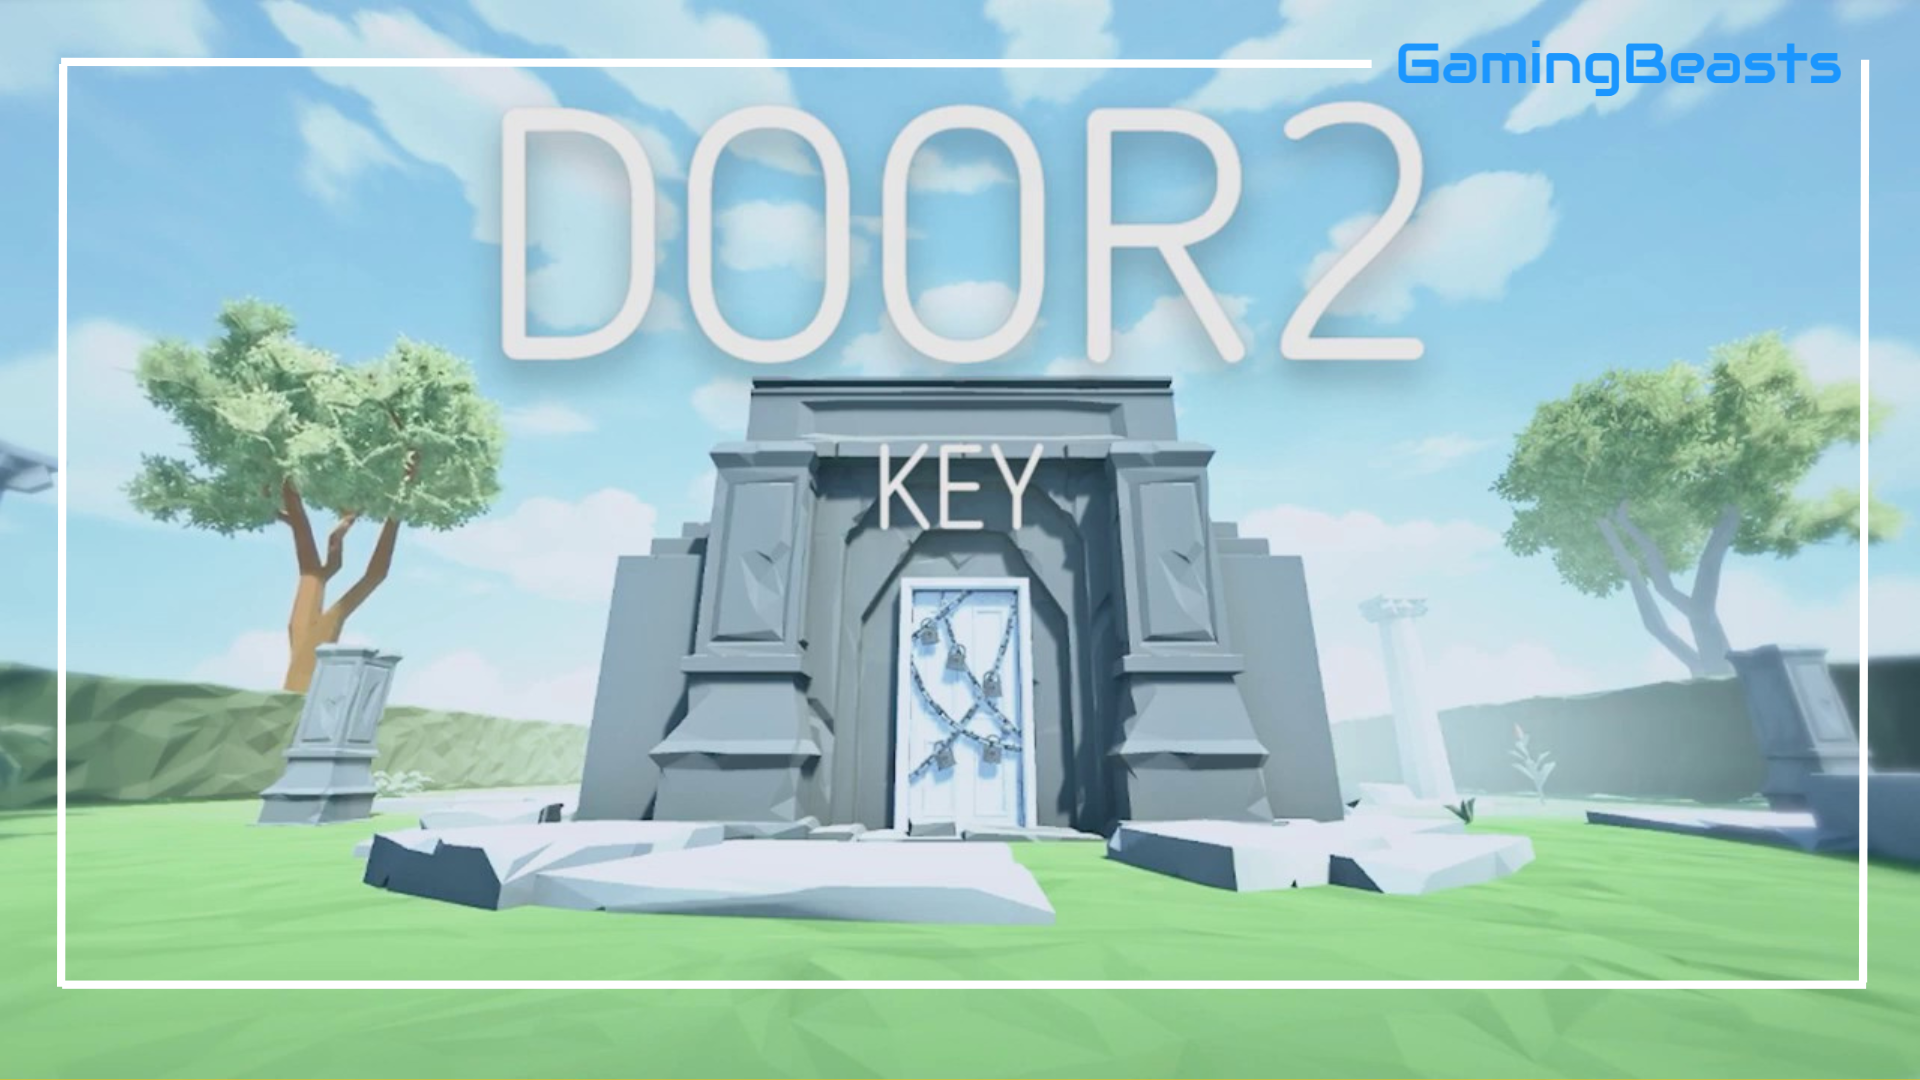 Key games com. Door 2 Key. Doors игра. Дорс 2 игра. Key игра.